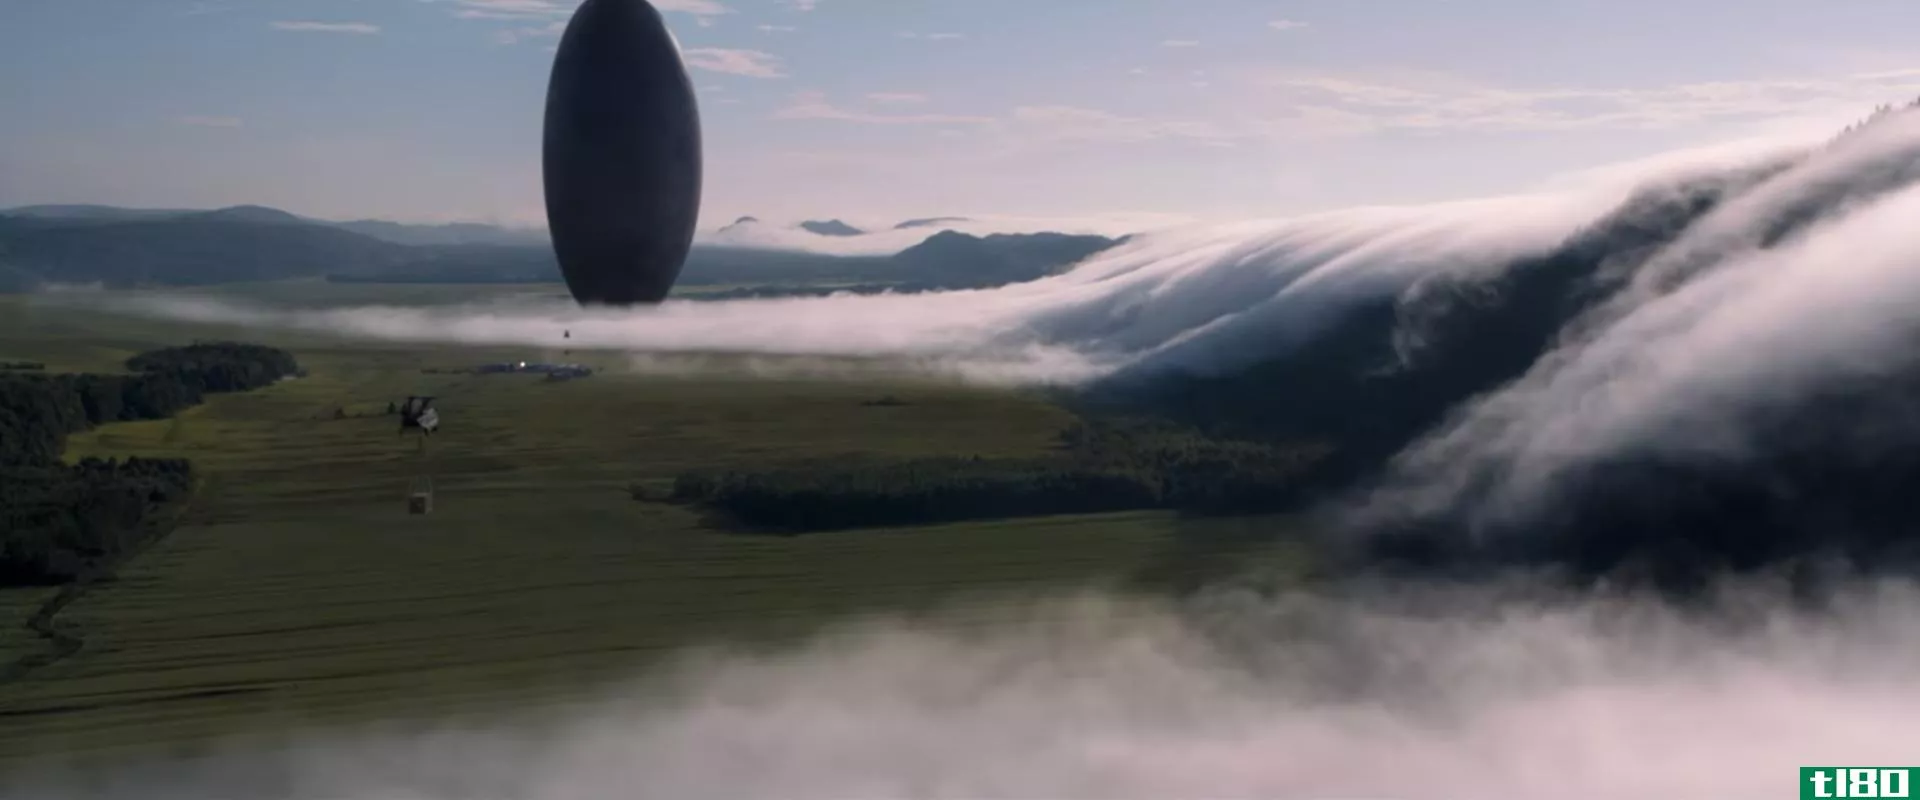 《抵达》已经是2016年最佳科幻电影的有力竞争者